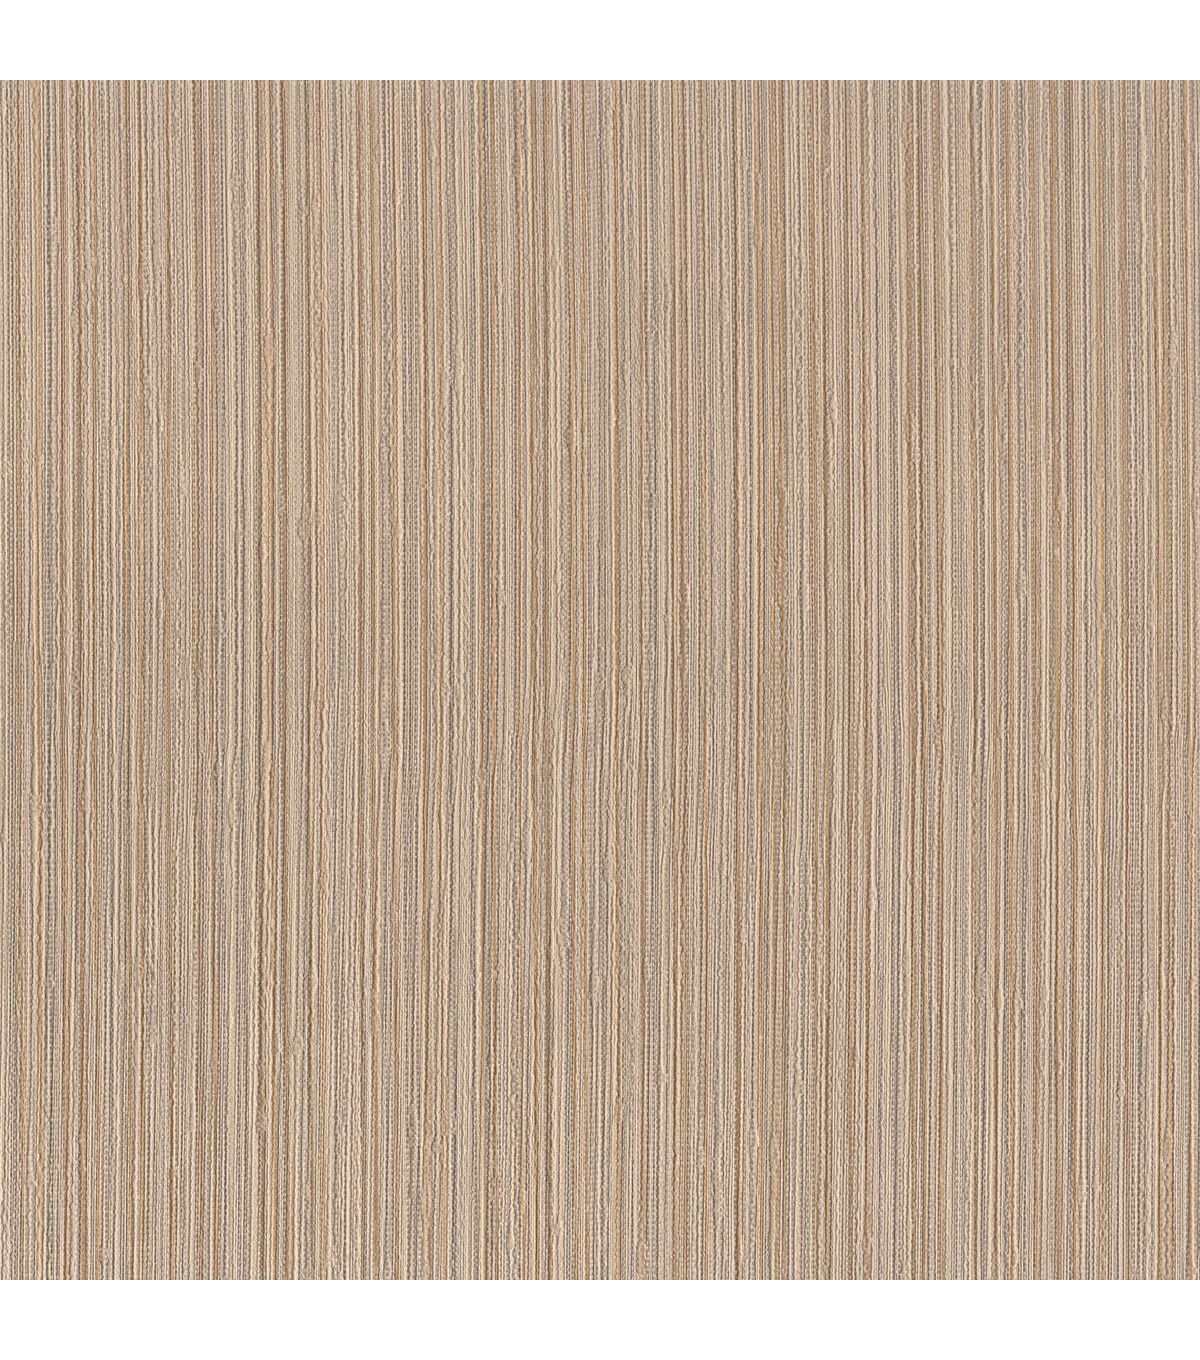 Finnick Light Brown Corduroy Stripe Wallpaper Texture